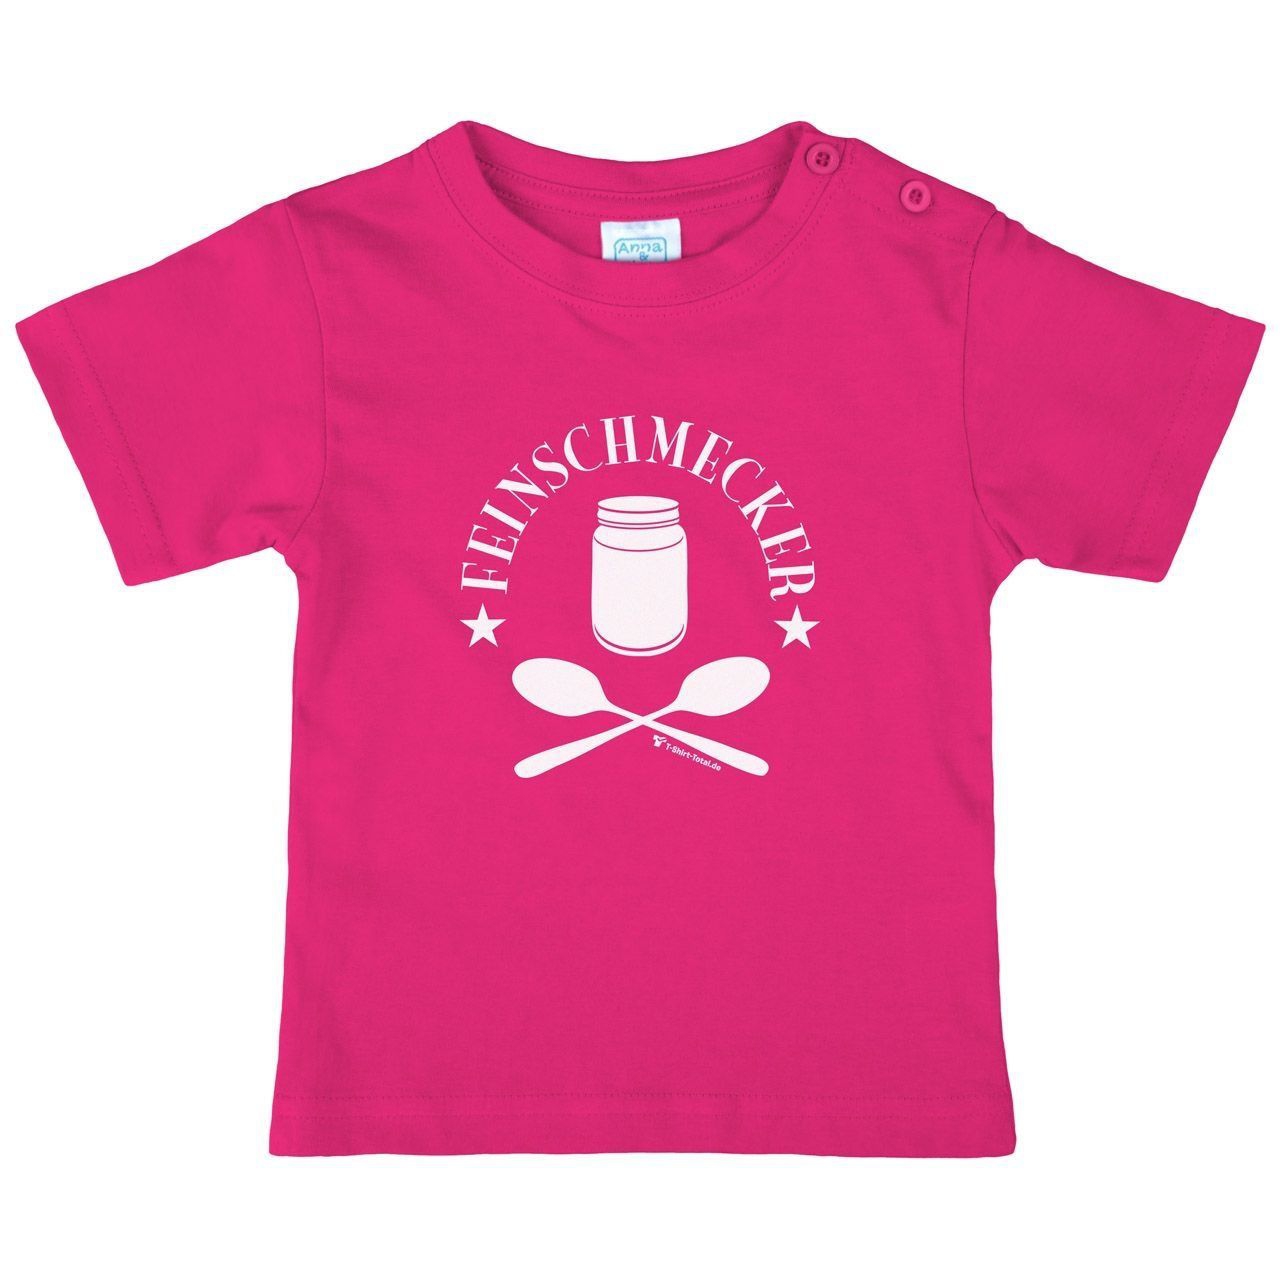 Feinschmecker Kinder T-Shirt pink 56 / 62